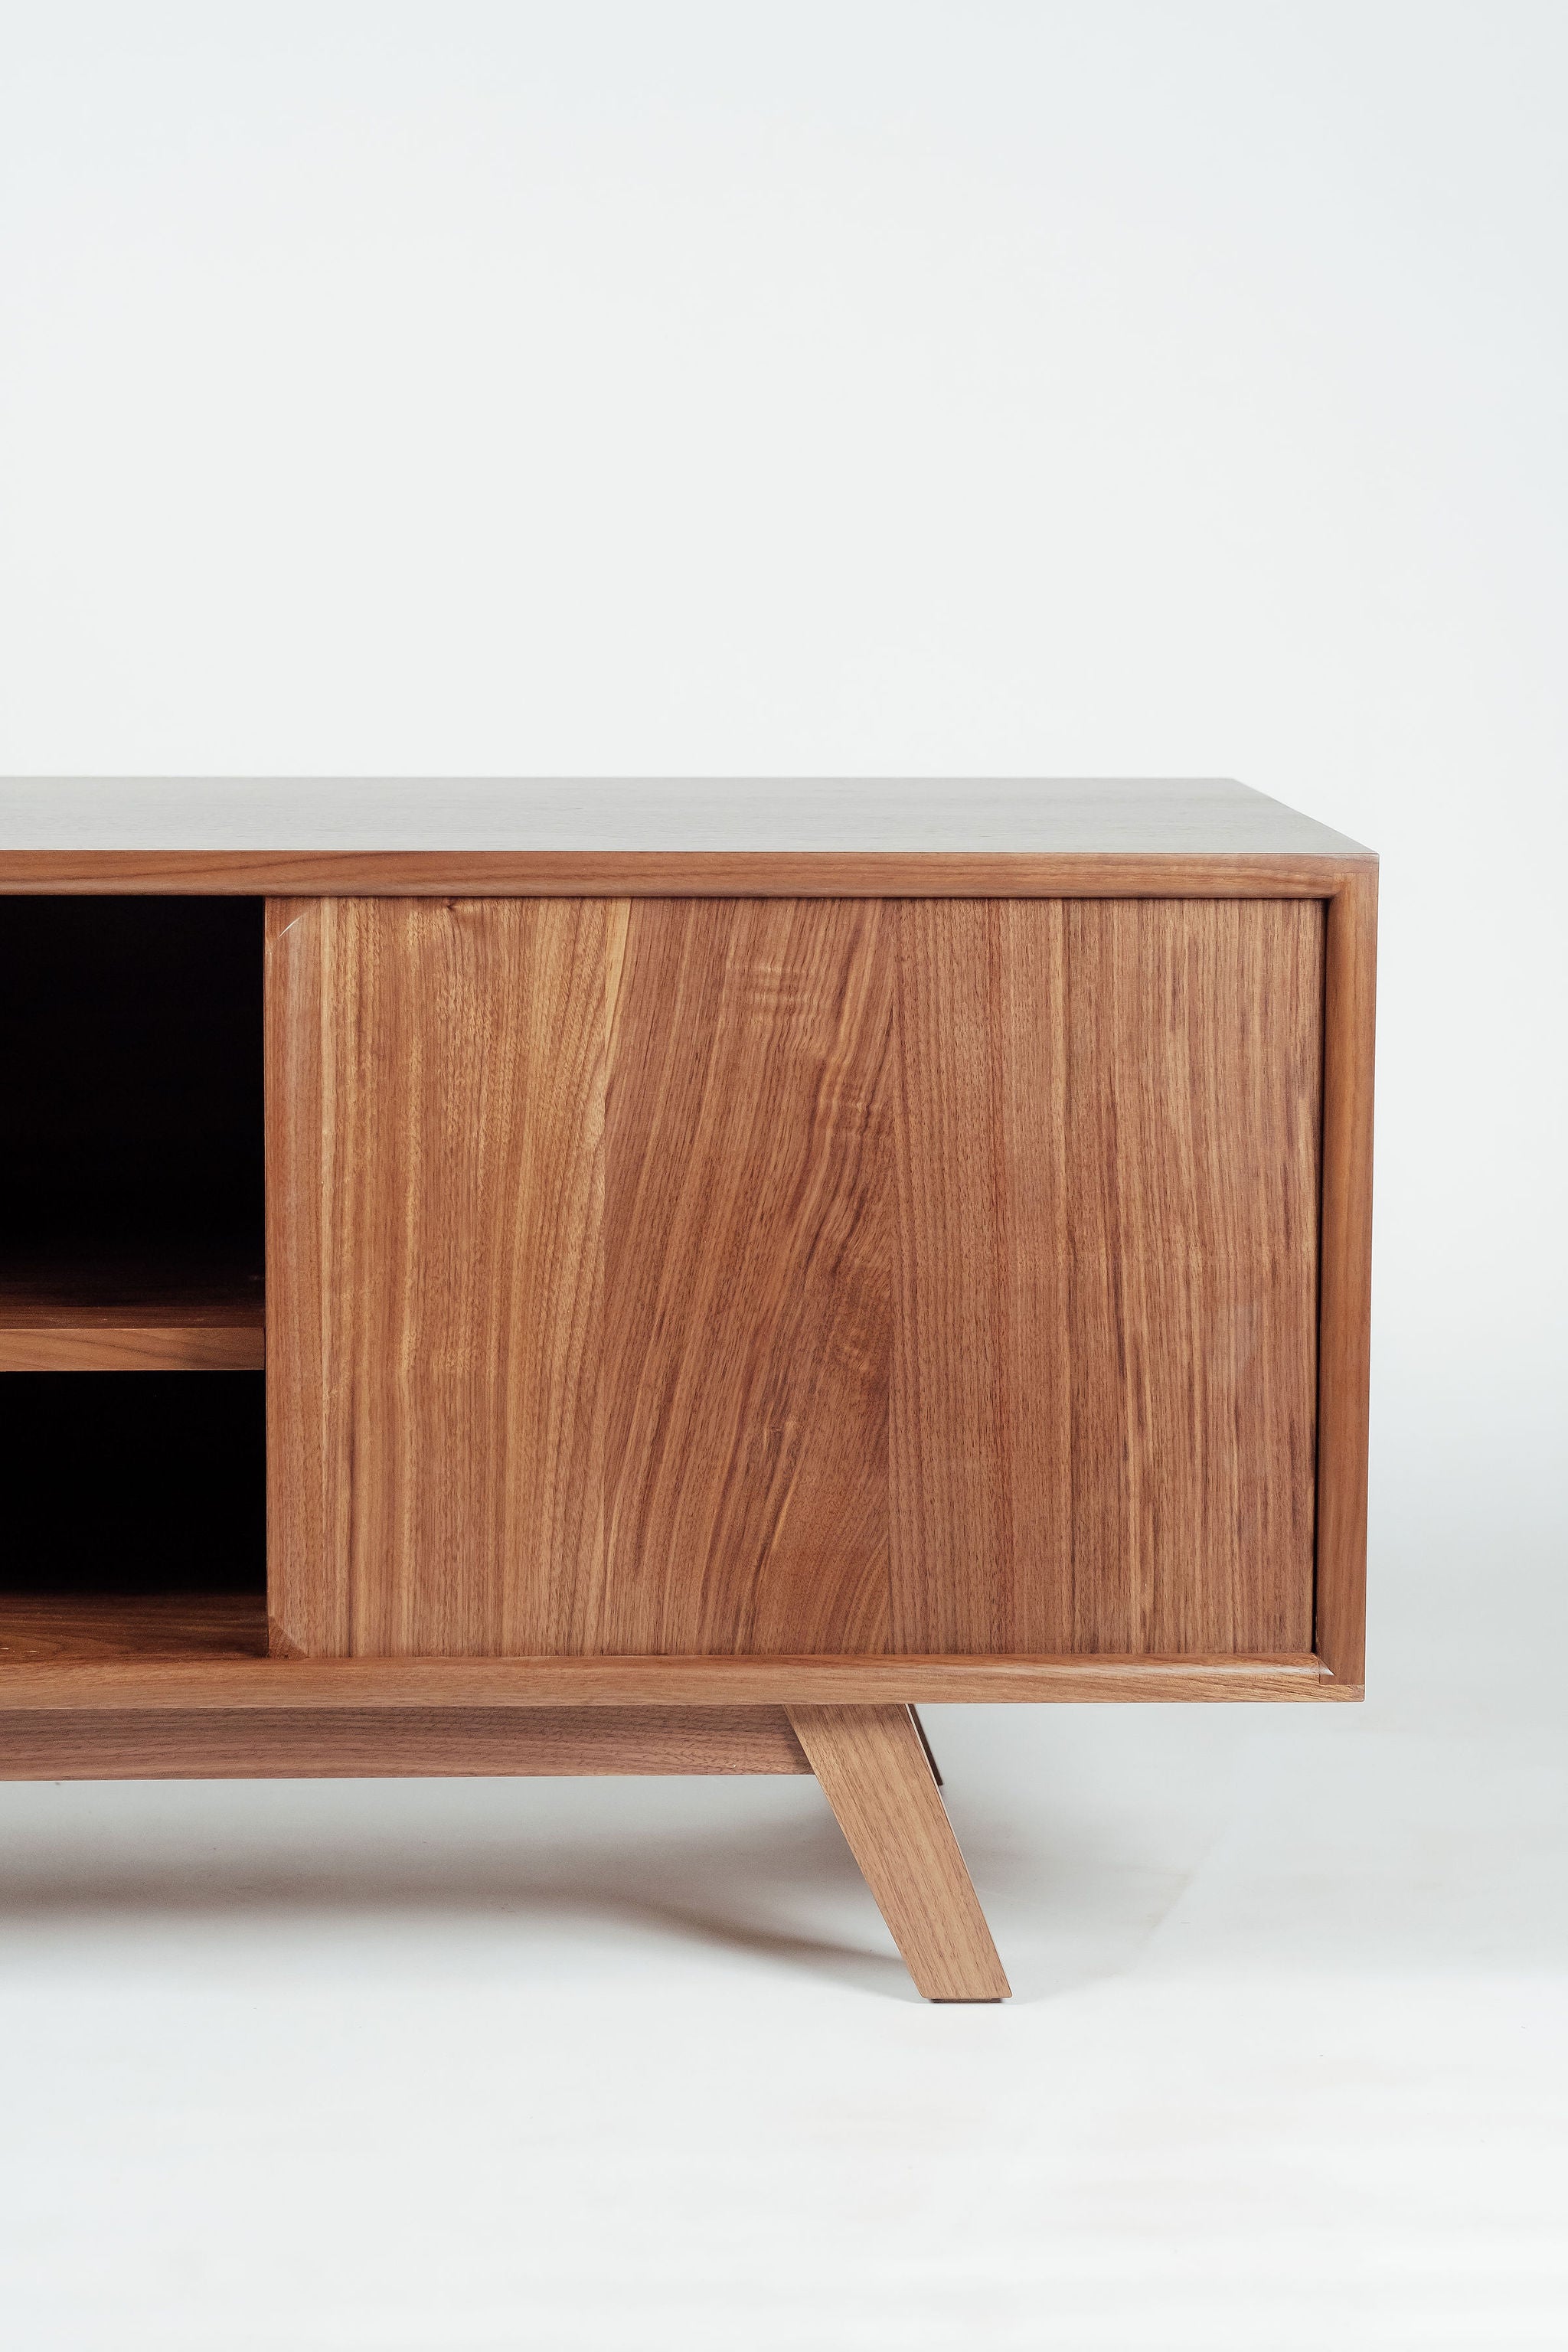 Zenith midcentury modern Media Credenza by Hunt & Noyer Furniture handmade in Michigan